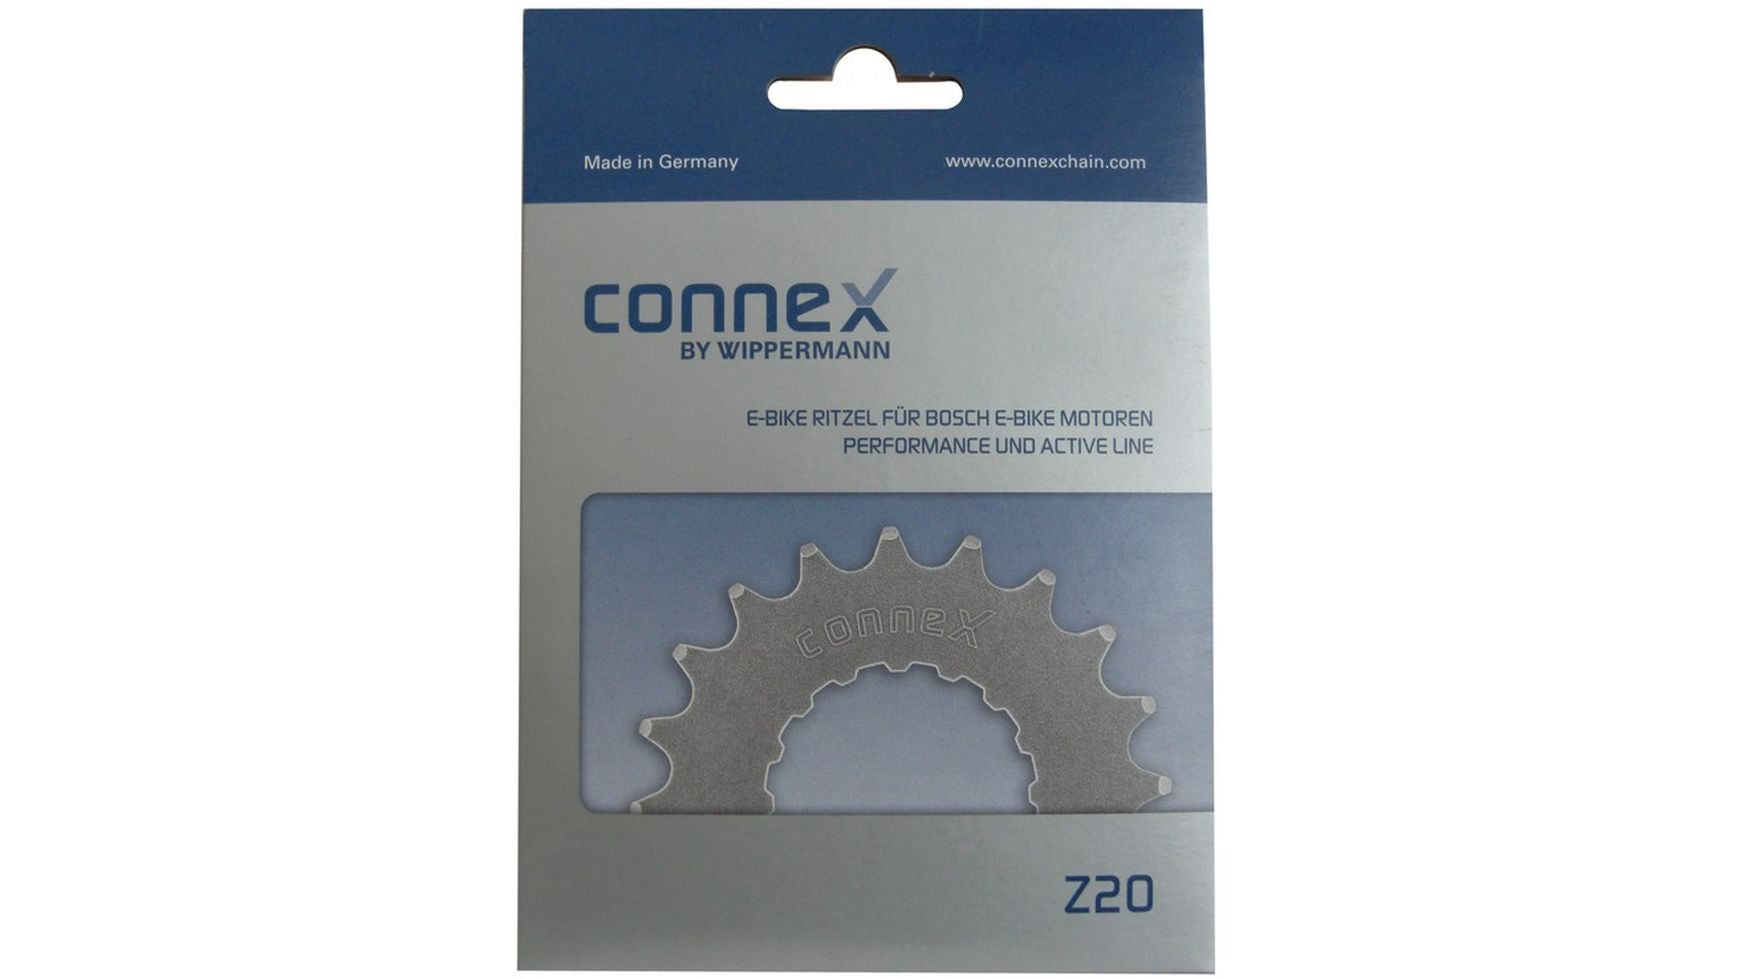 Connex 17 Zähne Ritzel Bosch von Connex